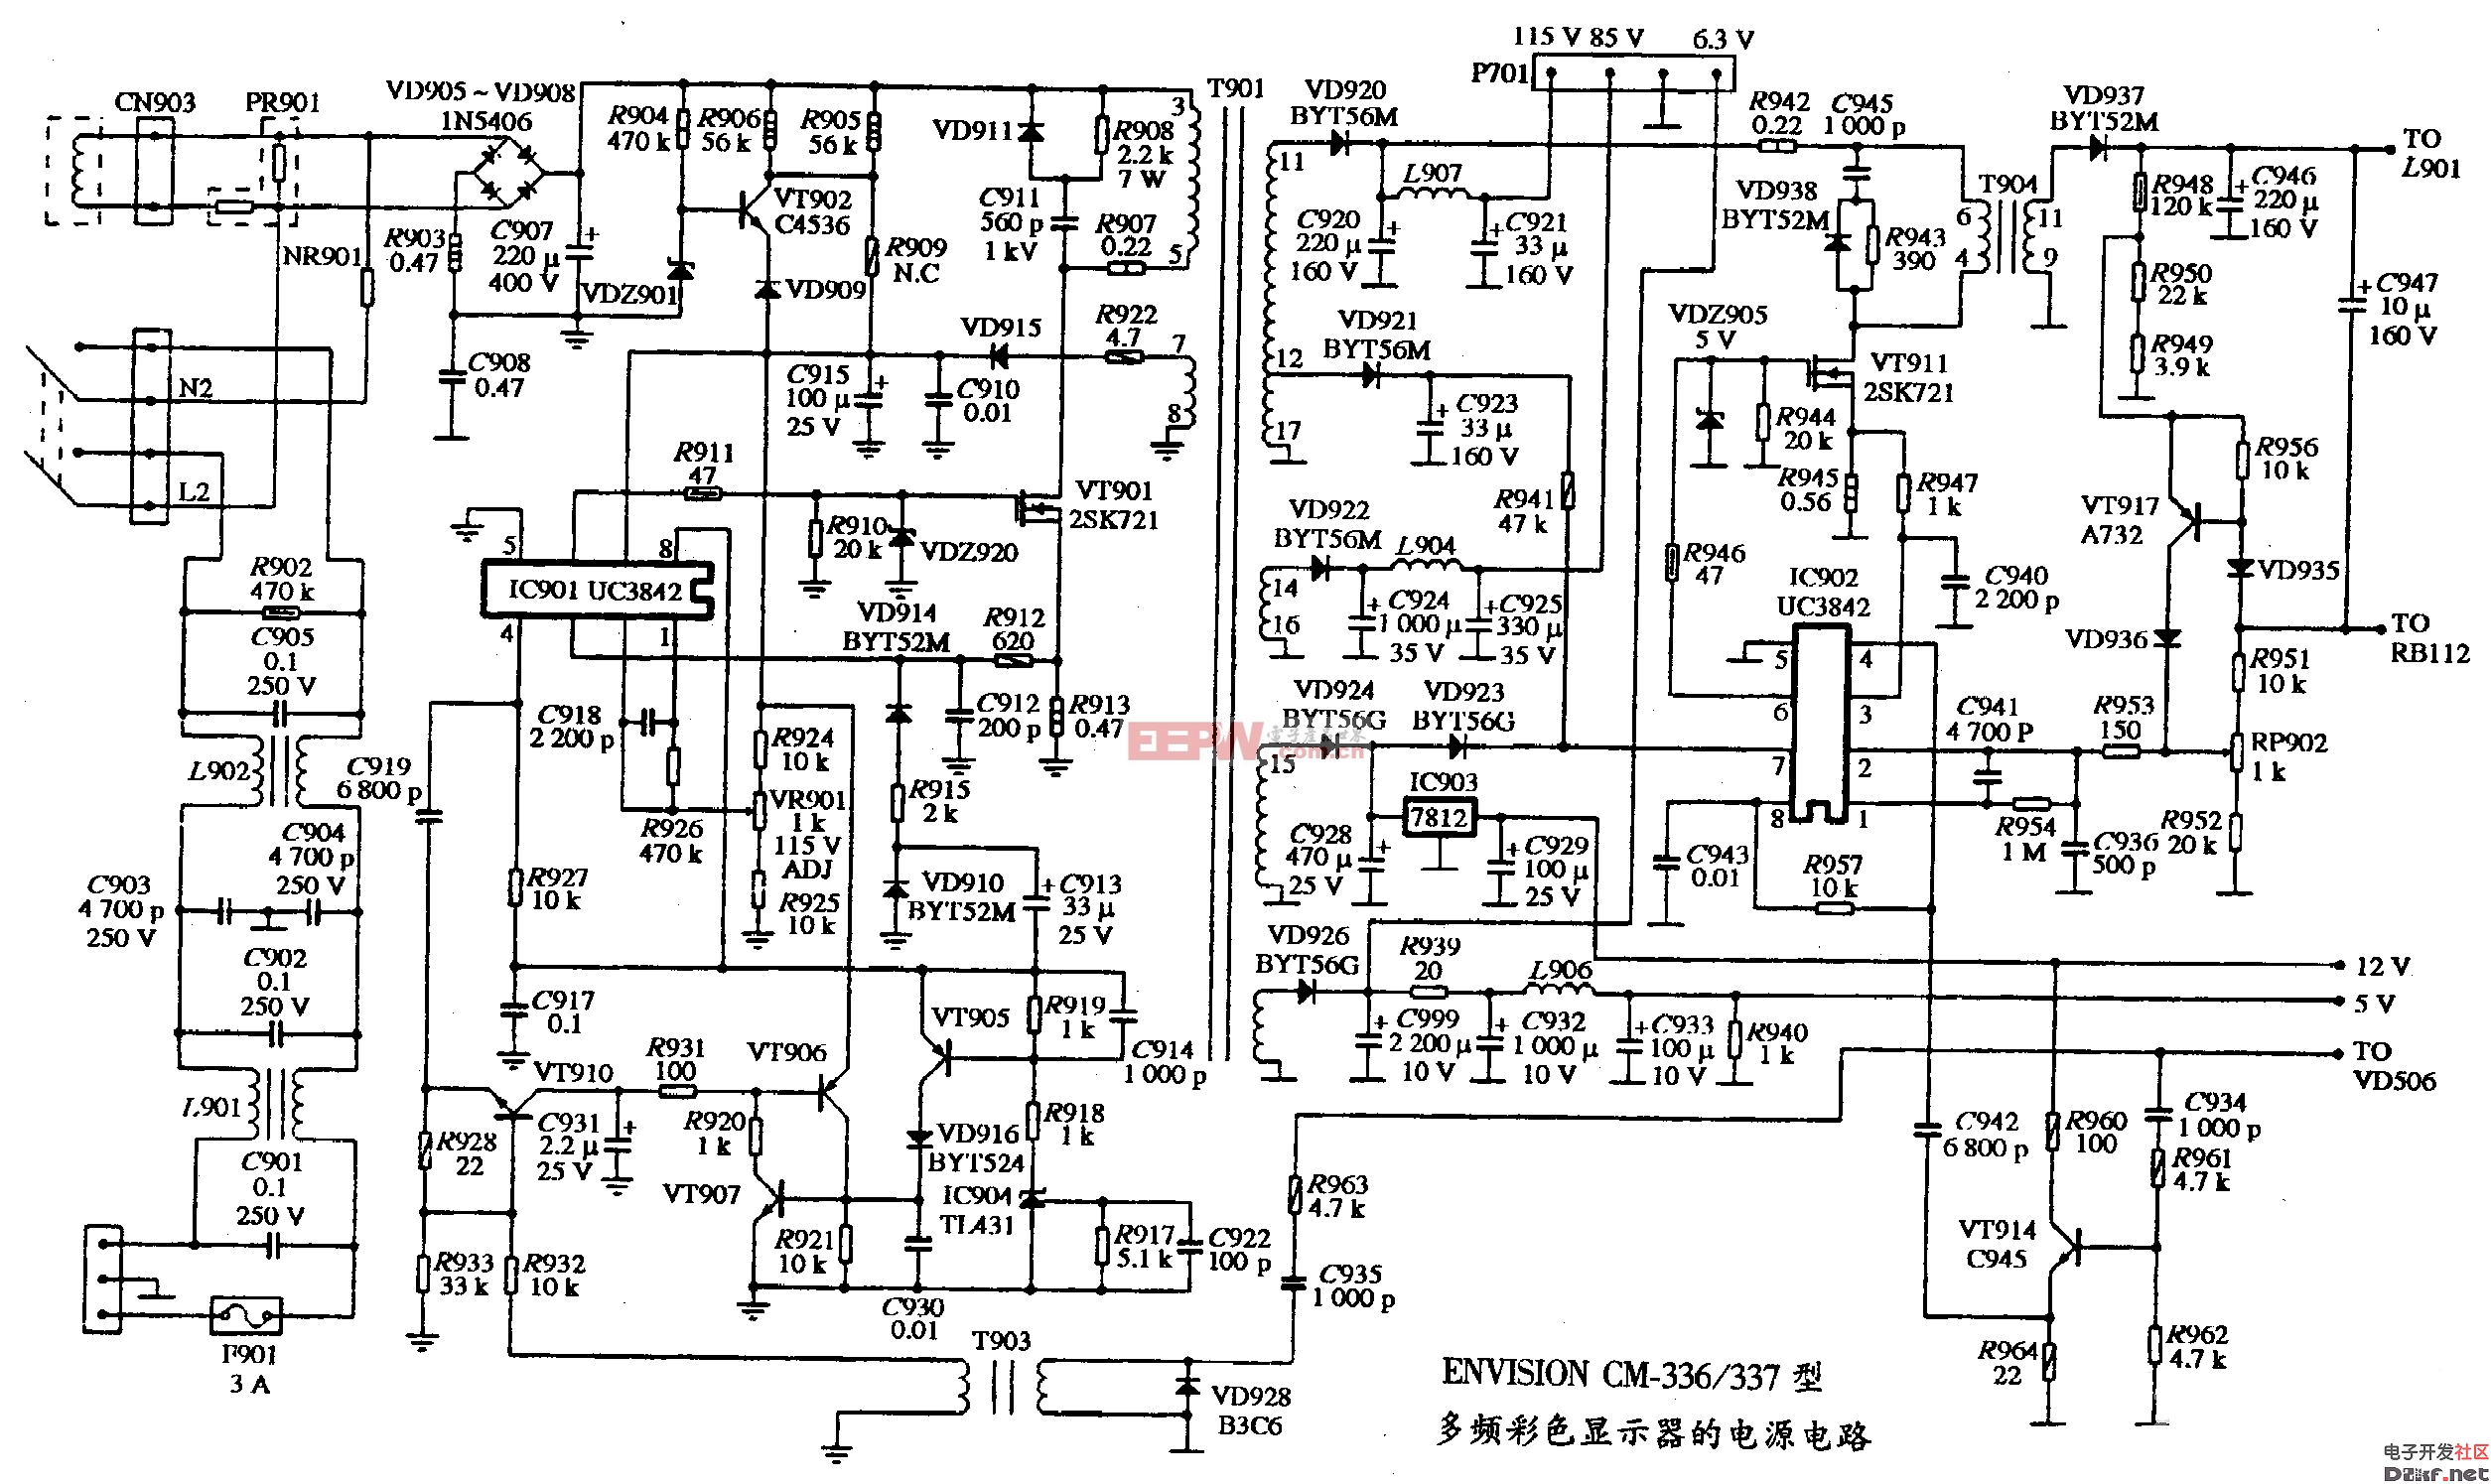 ENVISION CM-336/337型多频彩色显示器的电源电路图